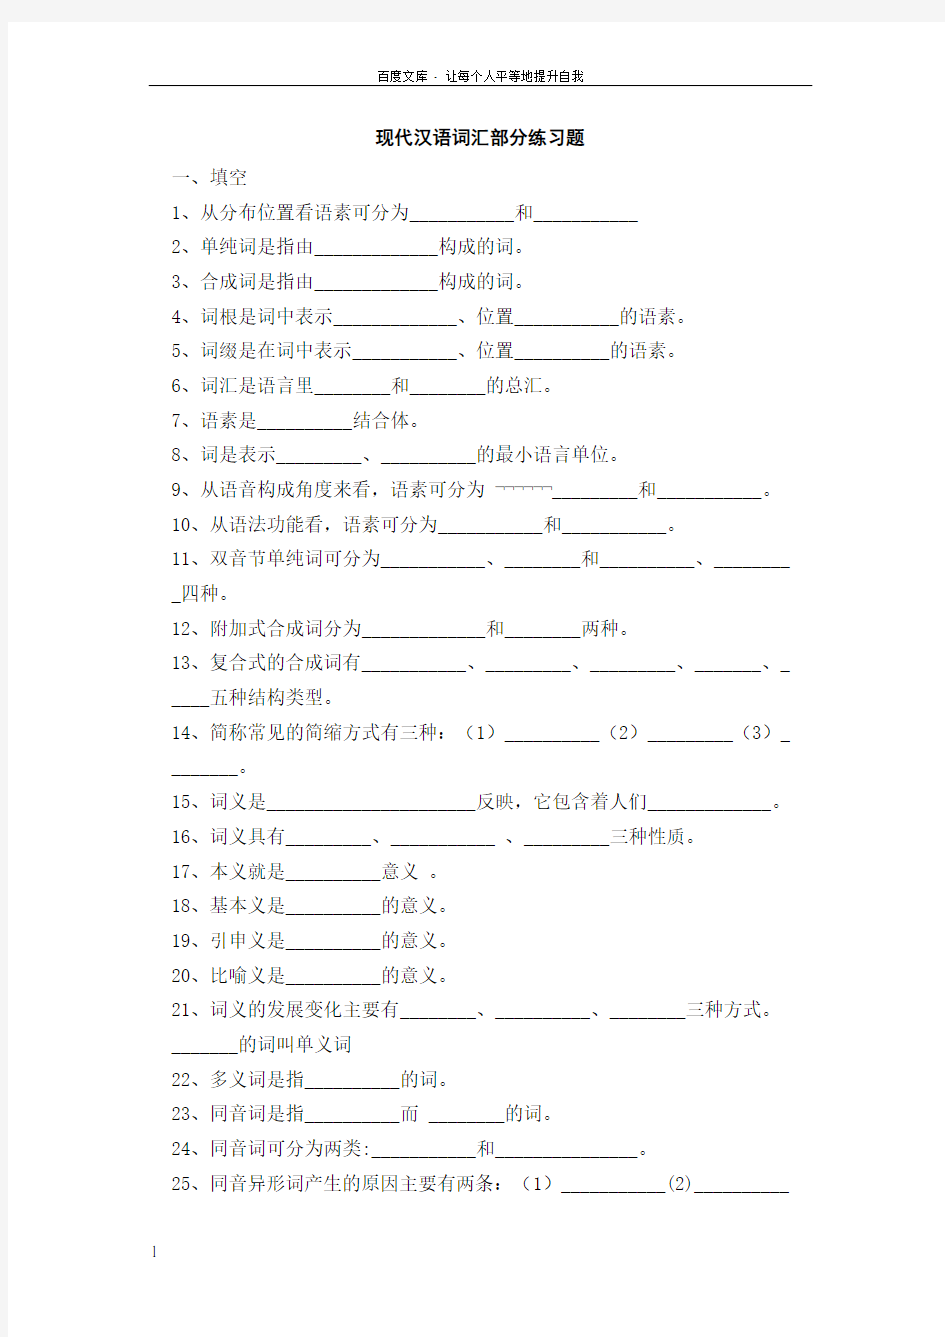 现代汉语词汇部分练习题